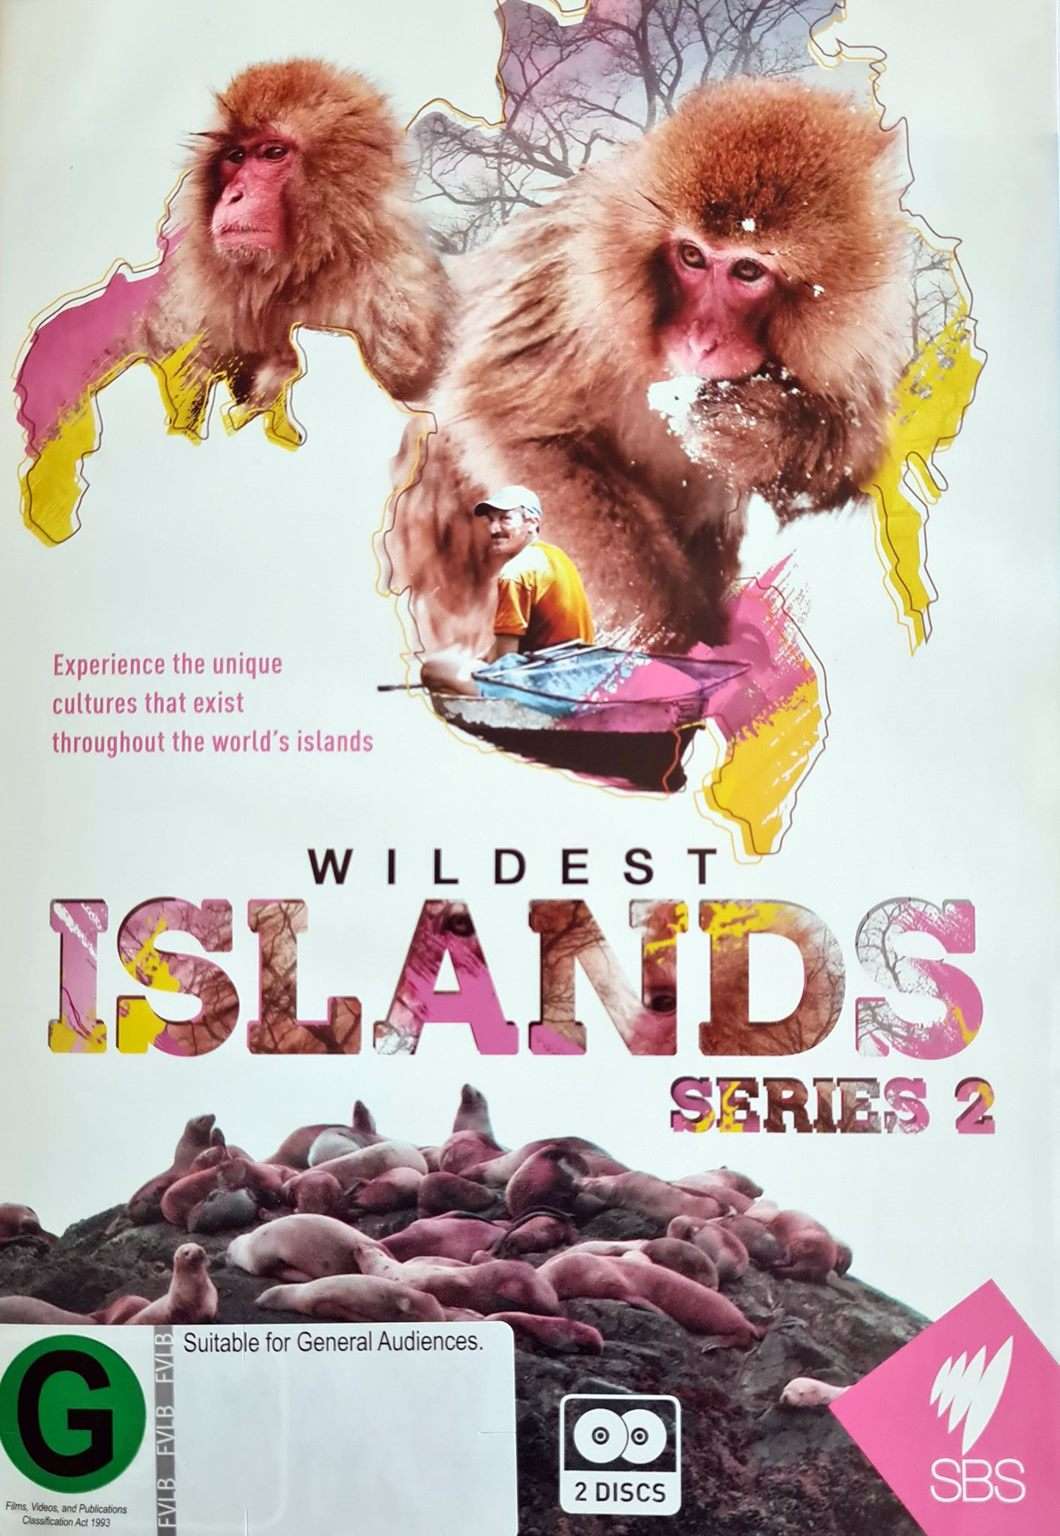 Wildest Islands: Series 2